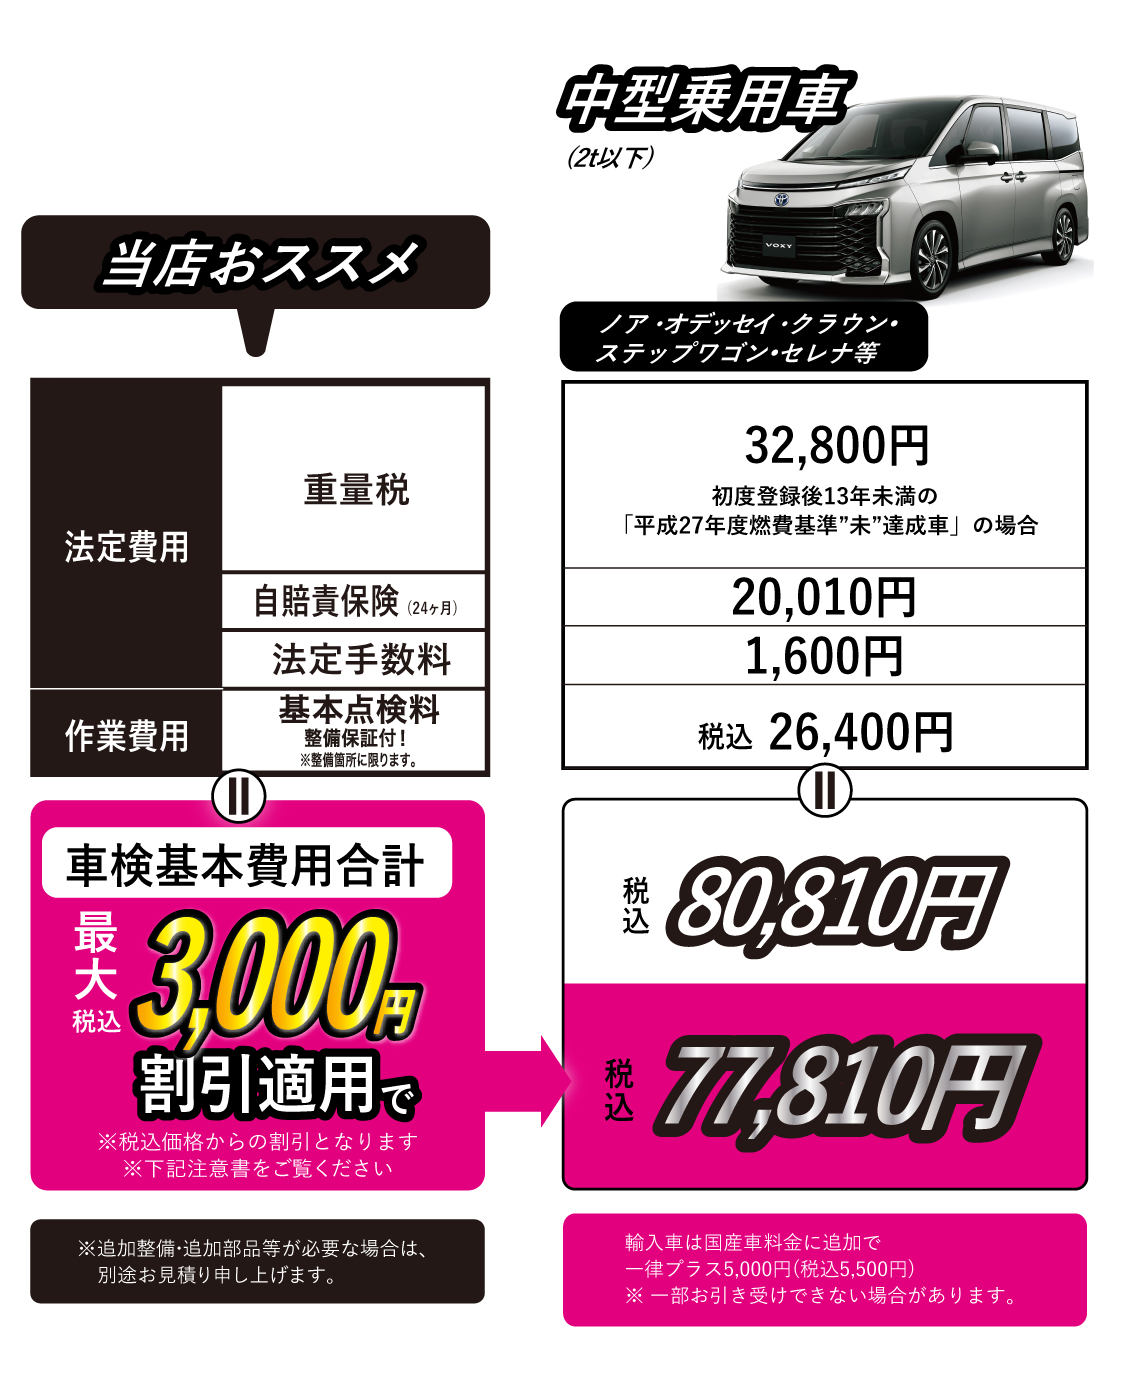 中型乗用車価格(2t以下)